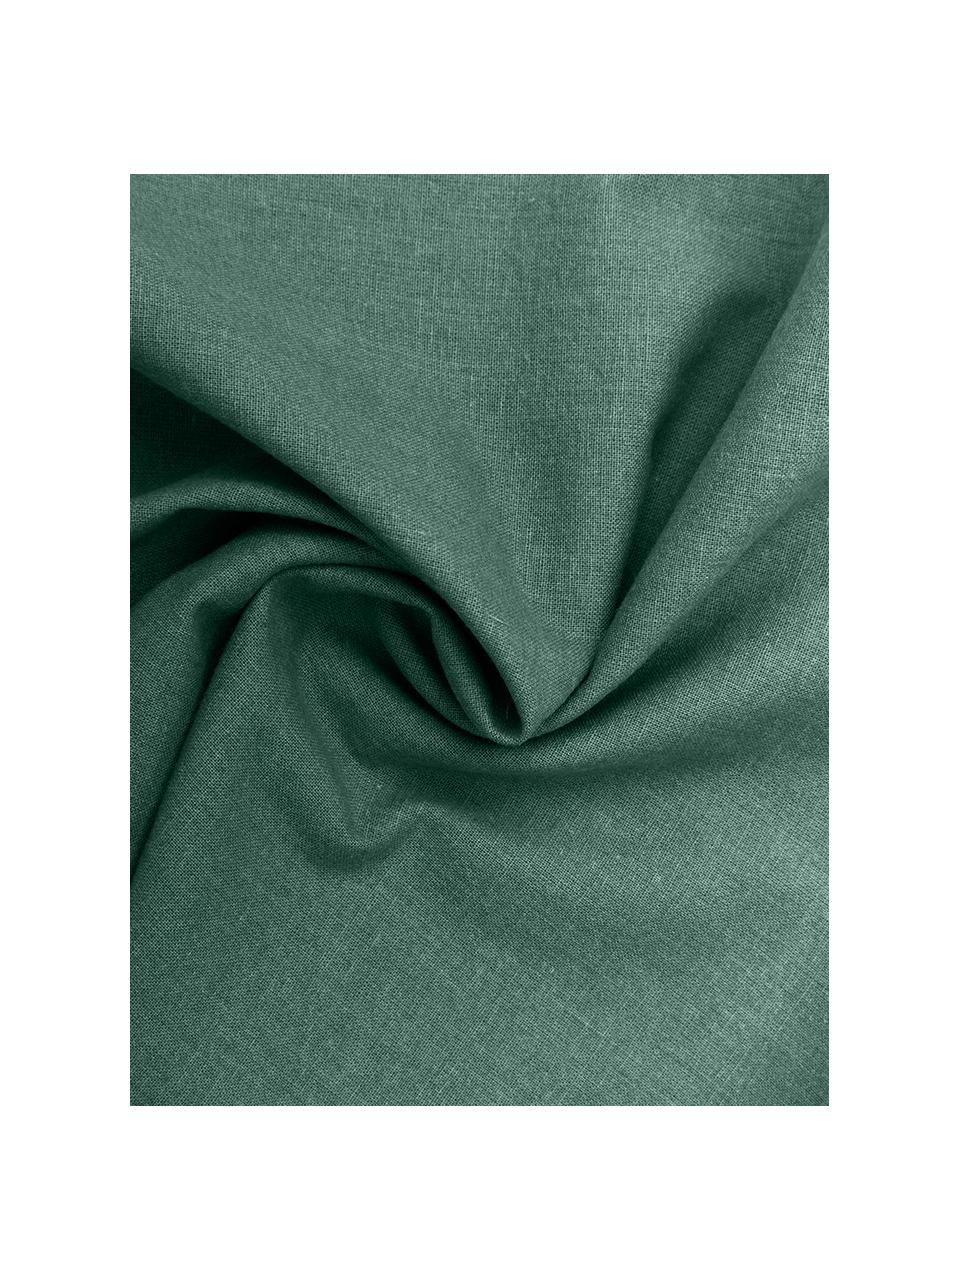 Poszewka na poduszkę z bawełny z efektem sprania Arlene, 2 szt., Ciemny zielony, S 40 x D 80 cm